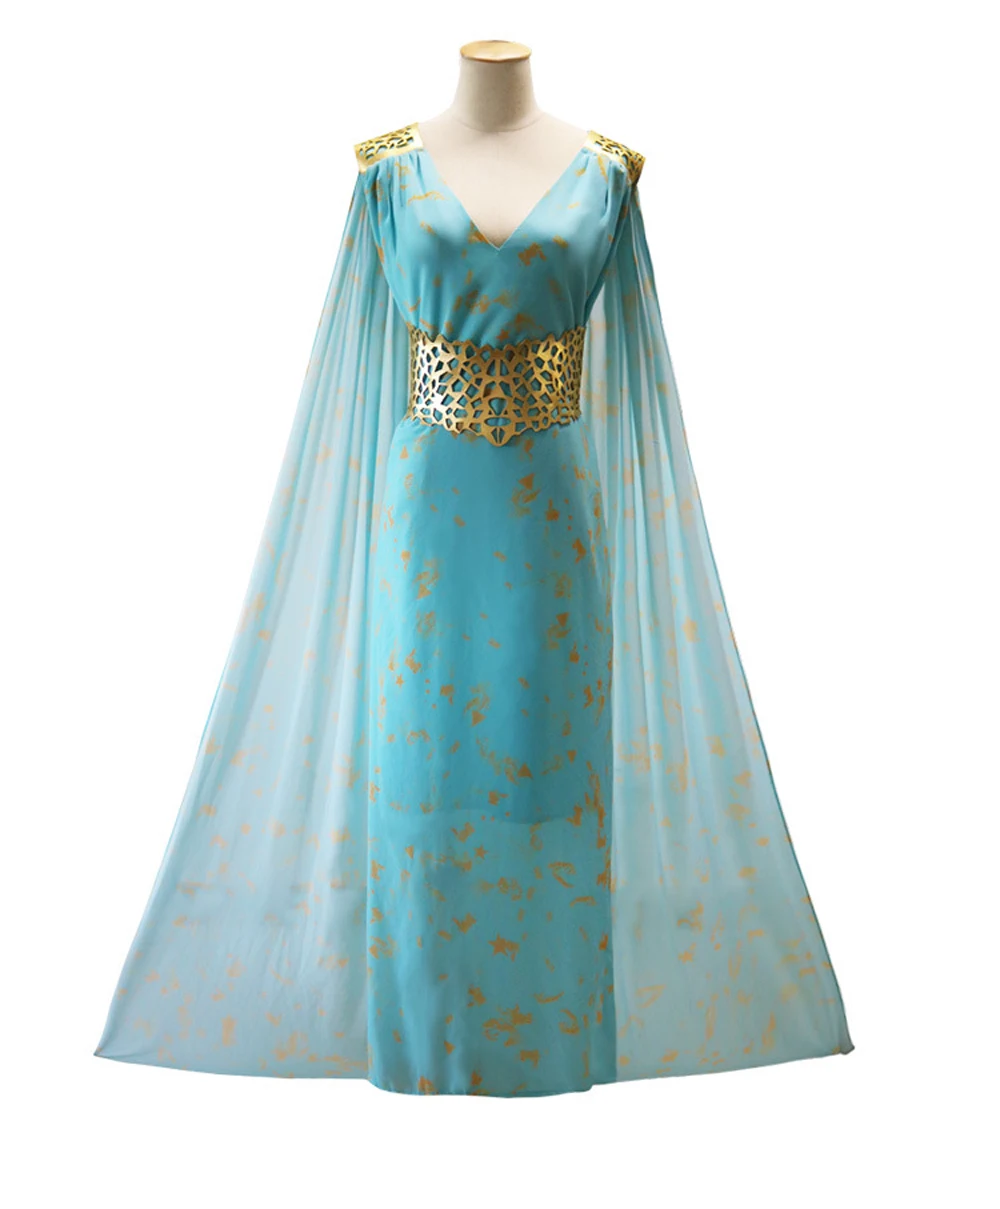 VEVEFUANG Daenerys targaryen Игра престолов косплей костюм черный белый зеленый синий cos платье fantasia парик модное женское платье